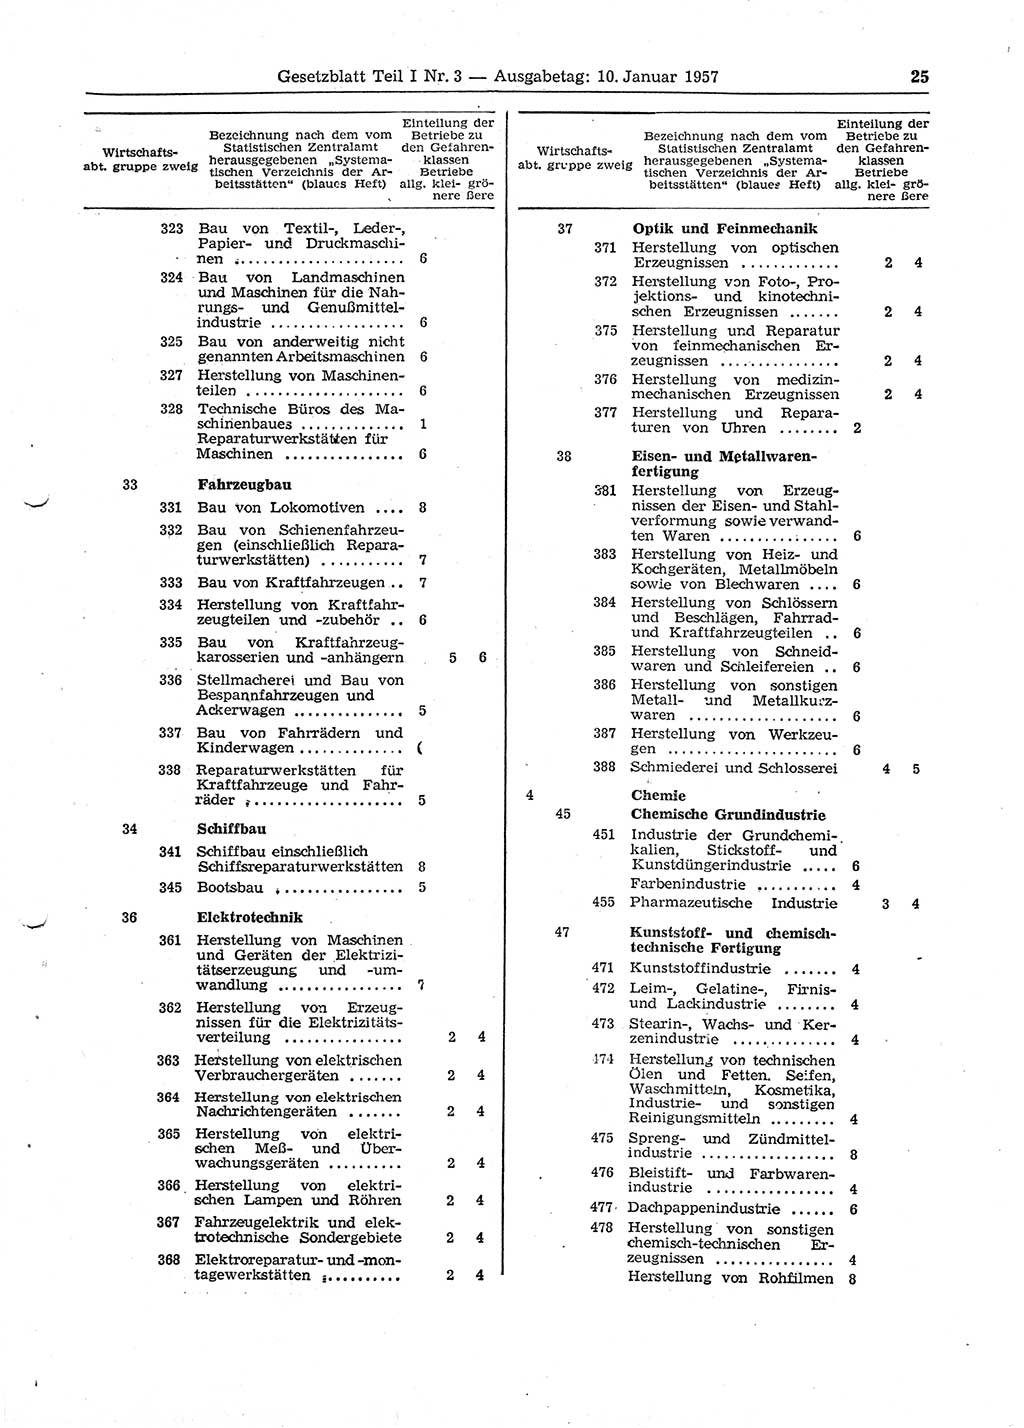 Gesetzblatt (GBl.) der Deutschen Demokratischen Republik (DDR) Teil Ⅰ 1957, Seite 25 (GBl. DDR Ⅰ 1957, S. 25)